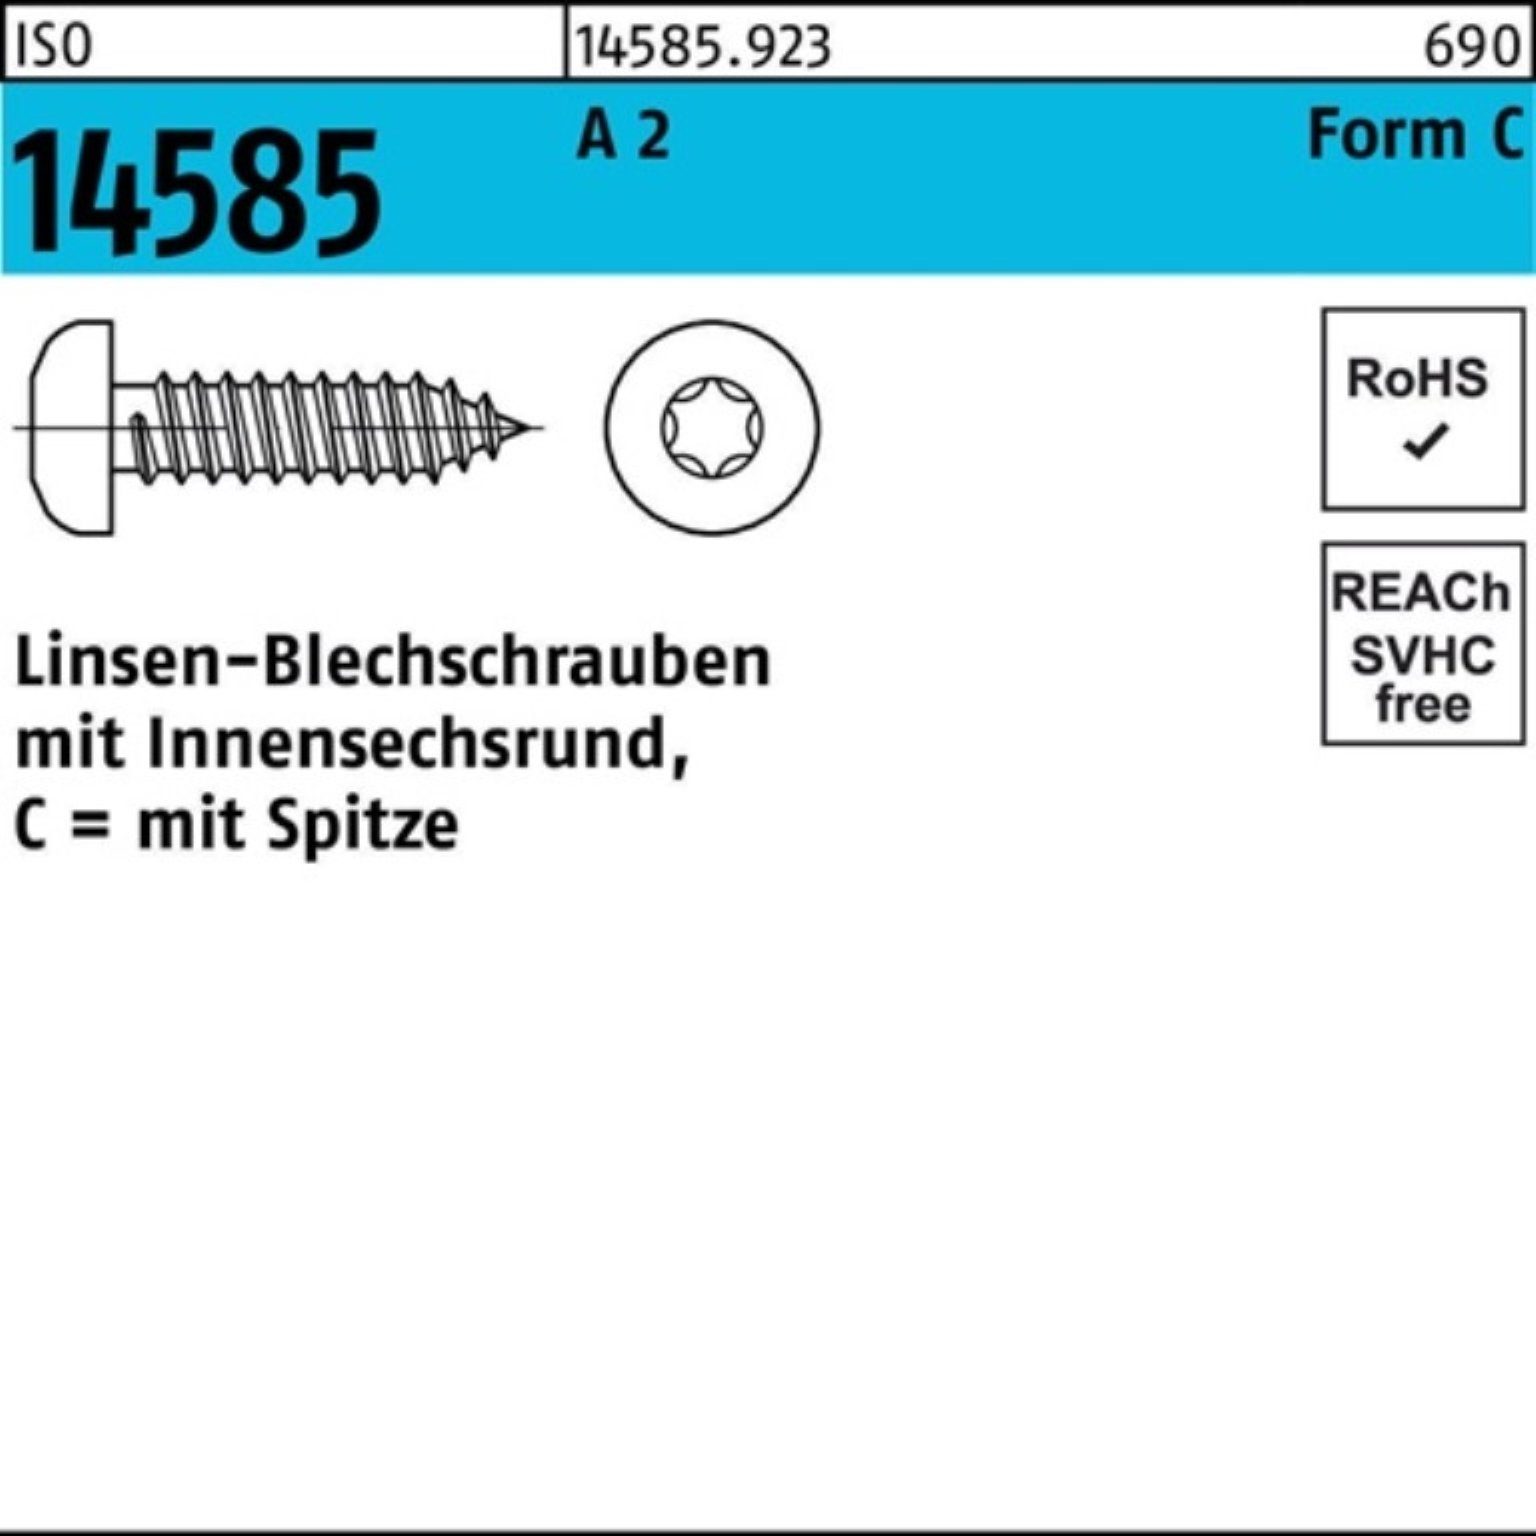 Reyher Blechschraube 250er Pack T25 14585 St Linsenblechschraube 80 2 A 250 -C ISR ISO 4,8x